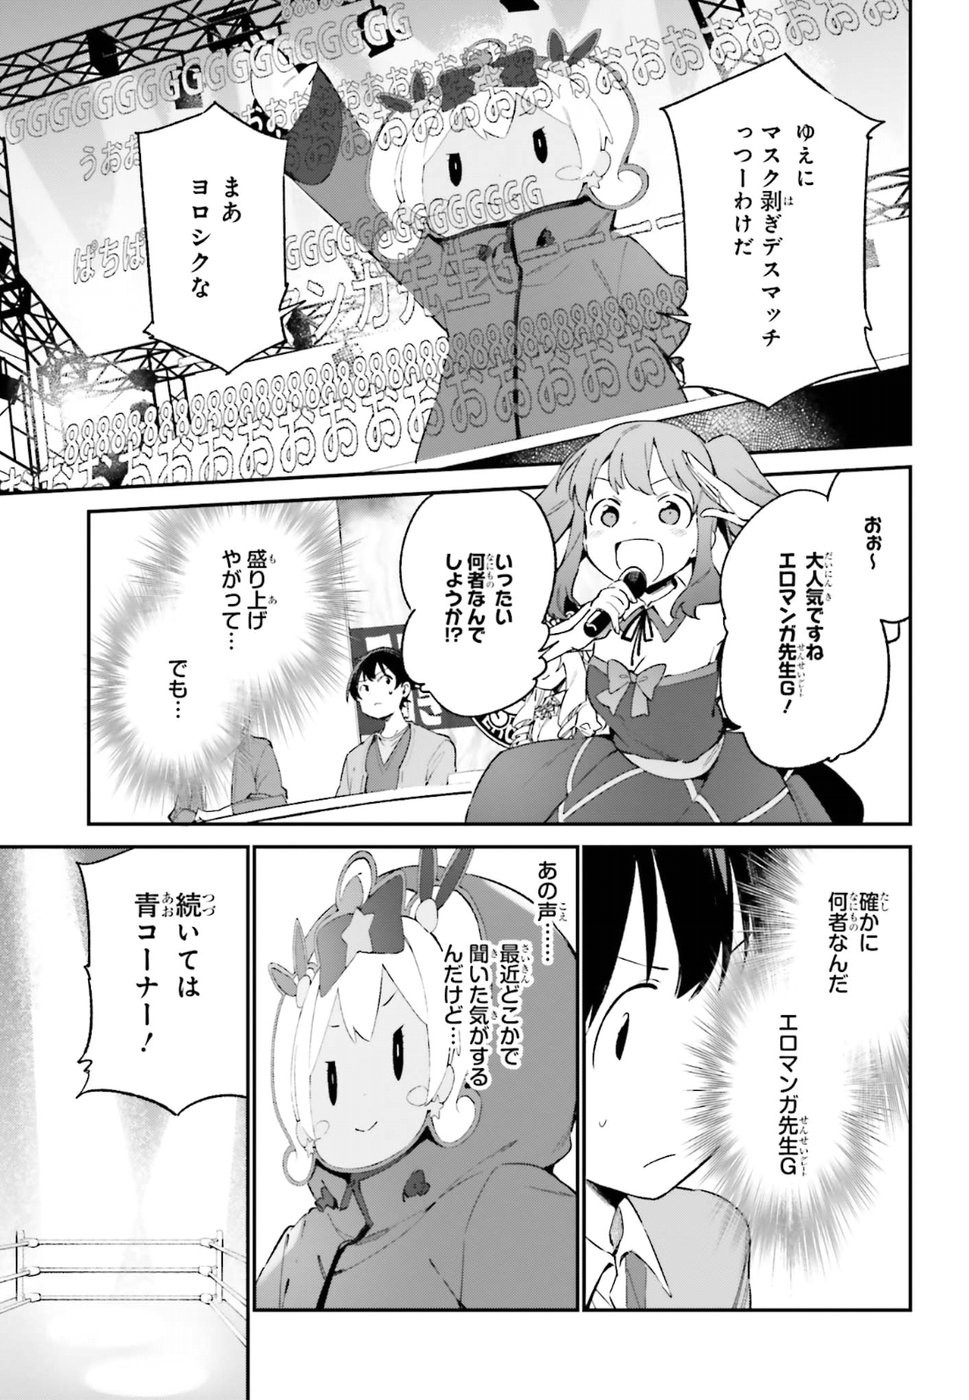 Ero Manga Sensei - Chapter 43 - Page 15